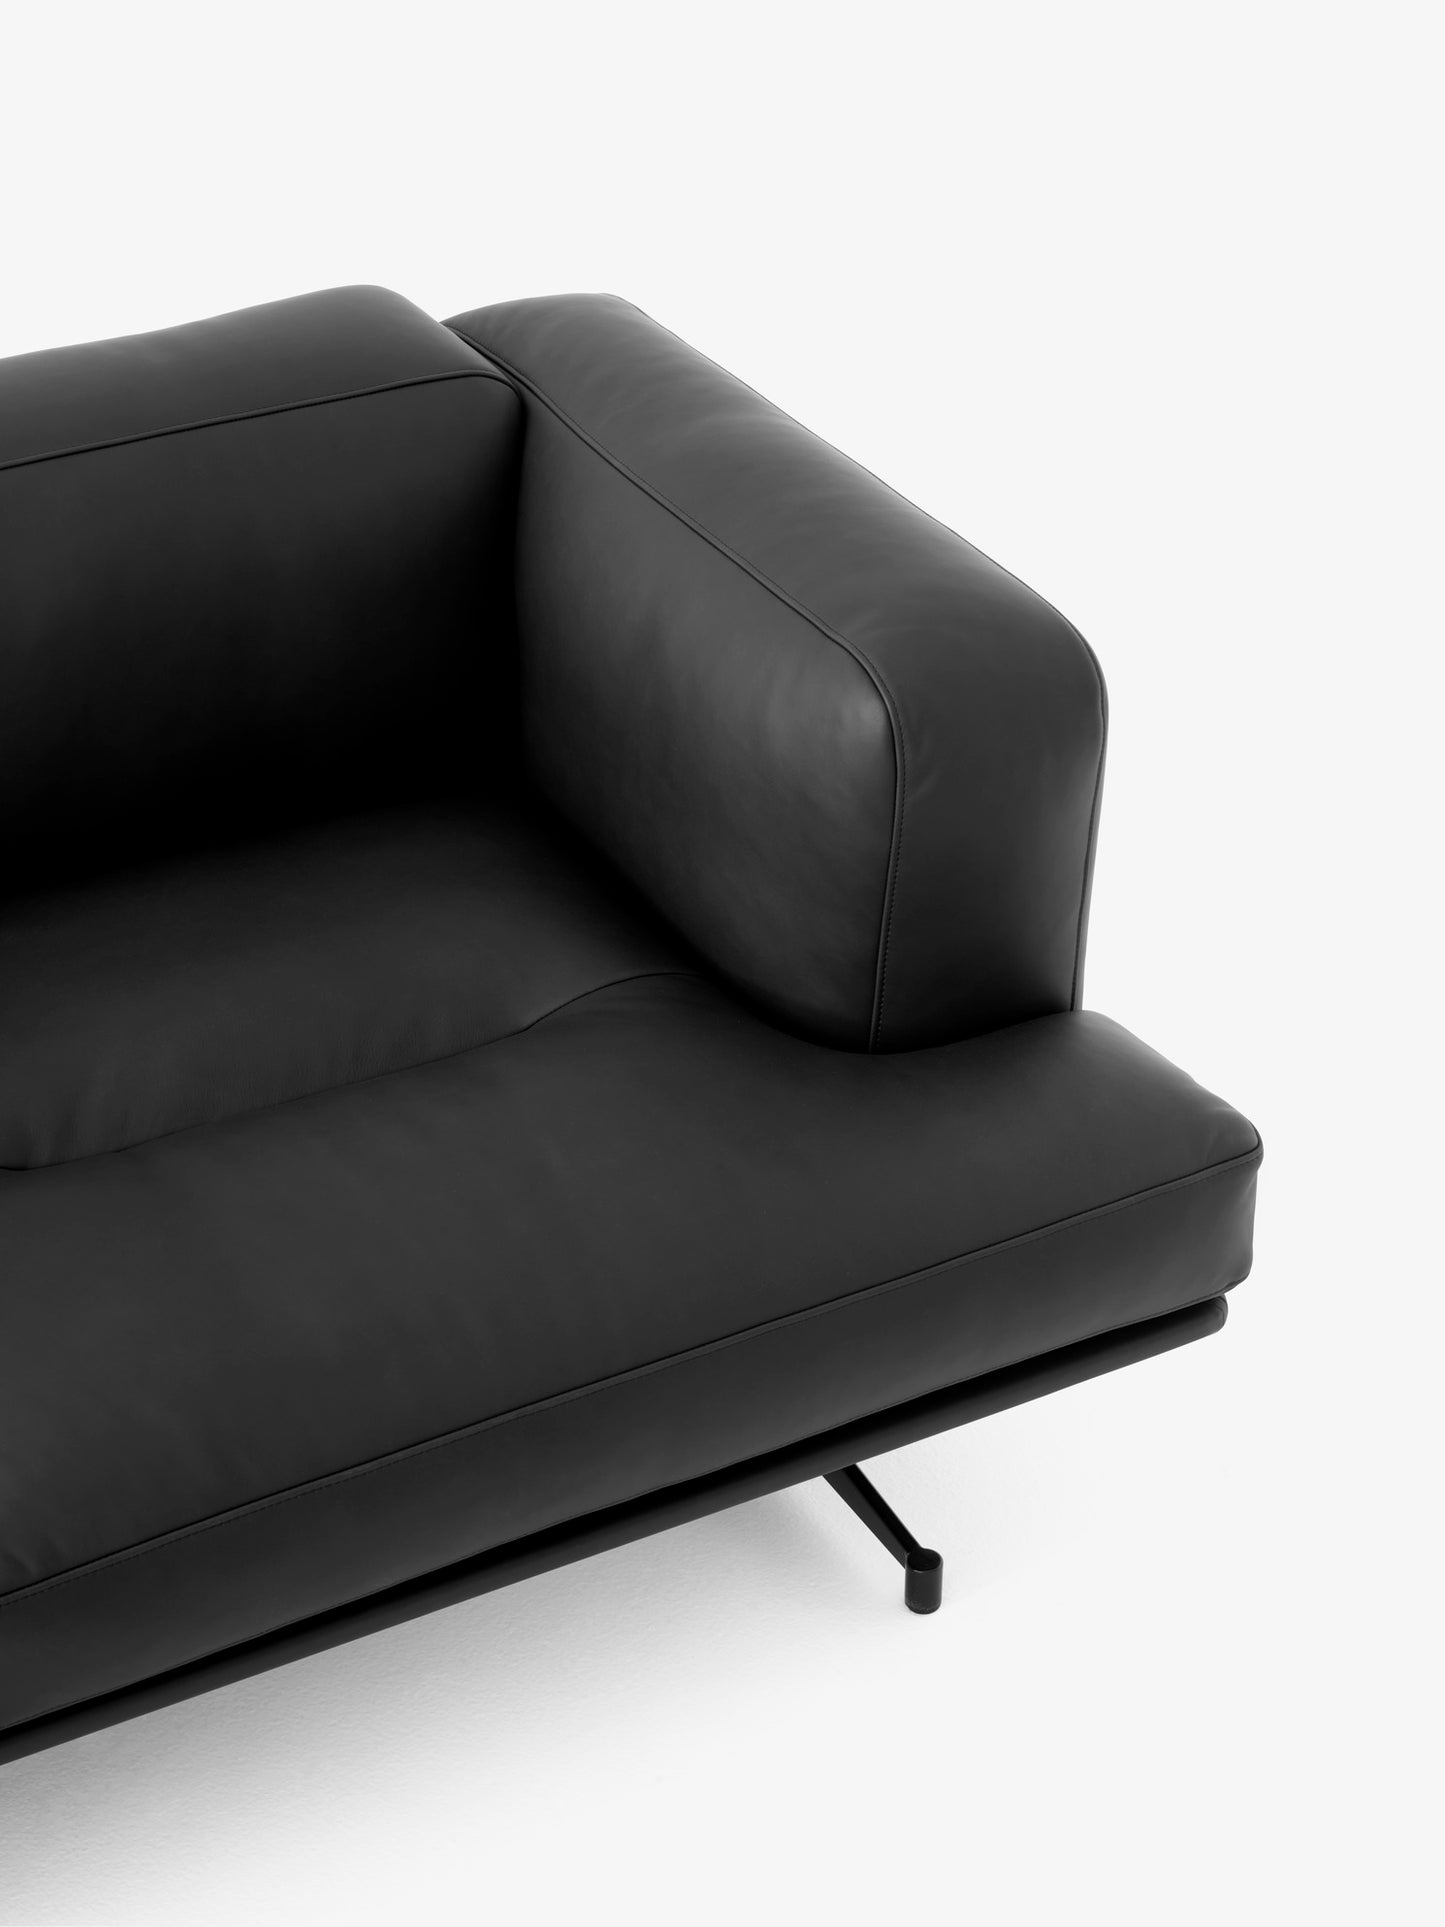 Inland sofa AV22